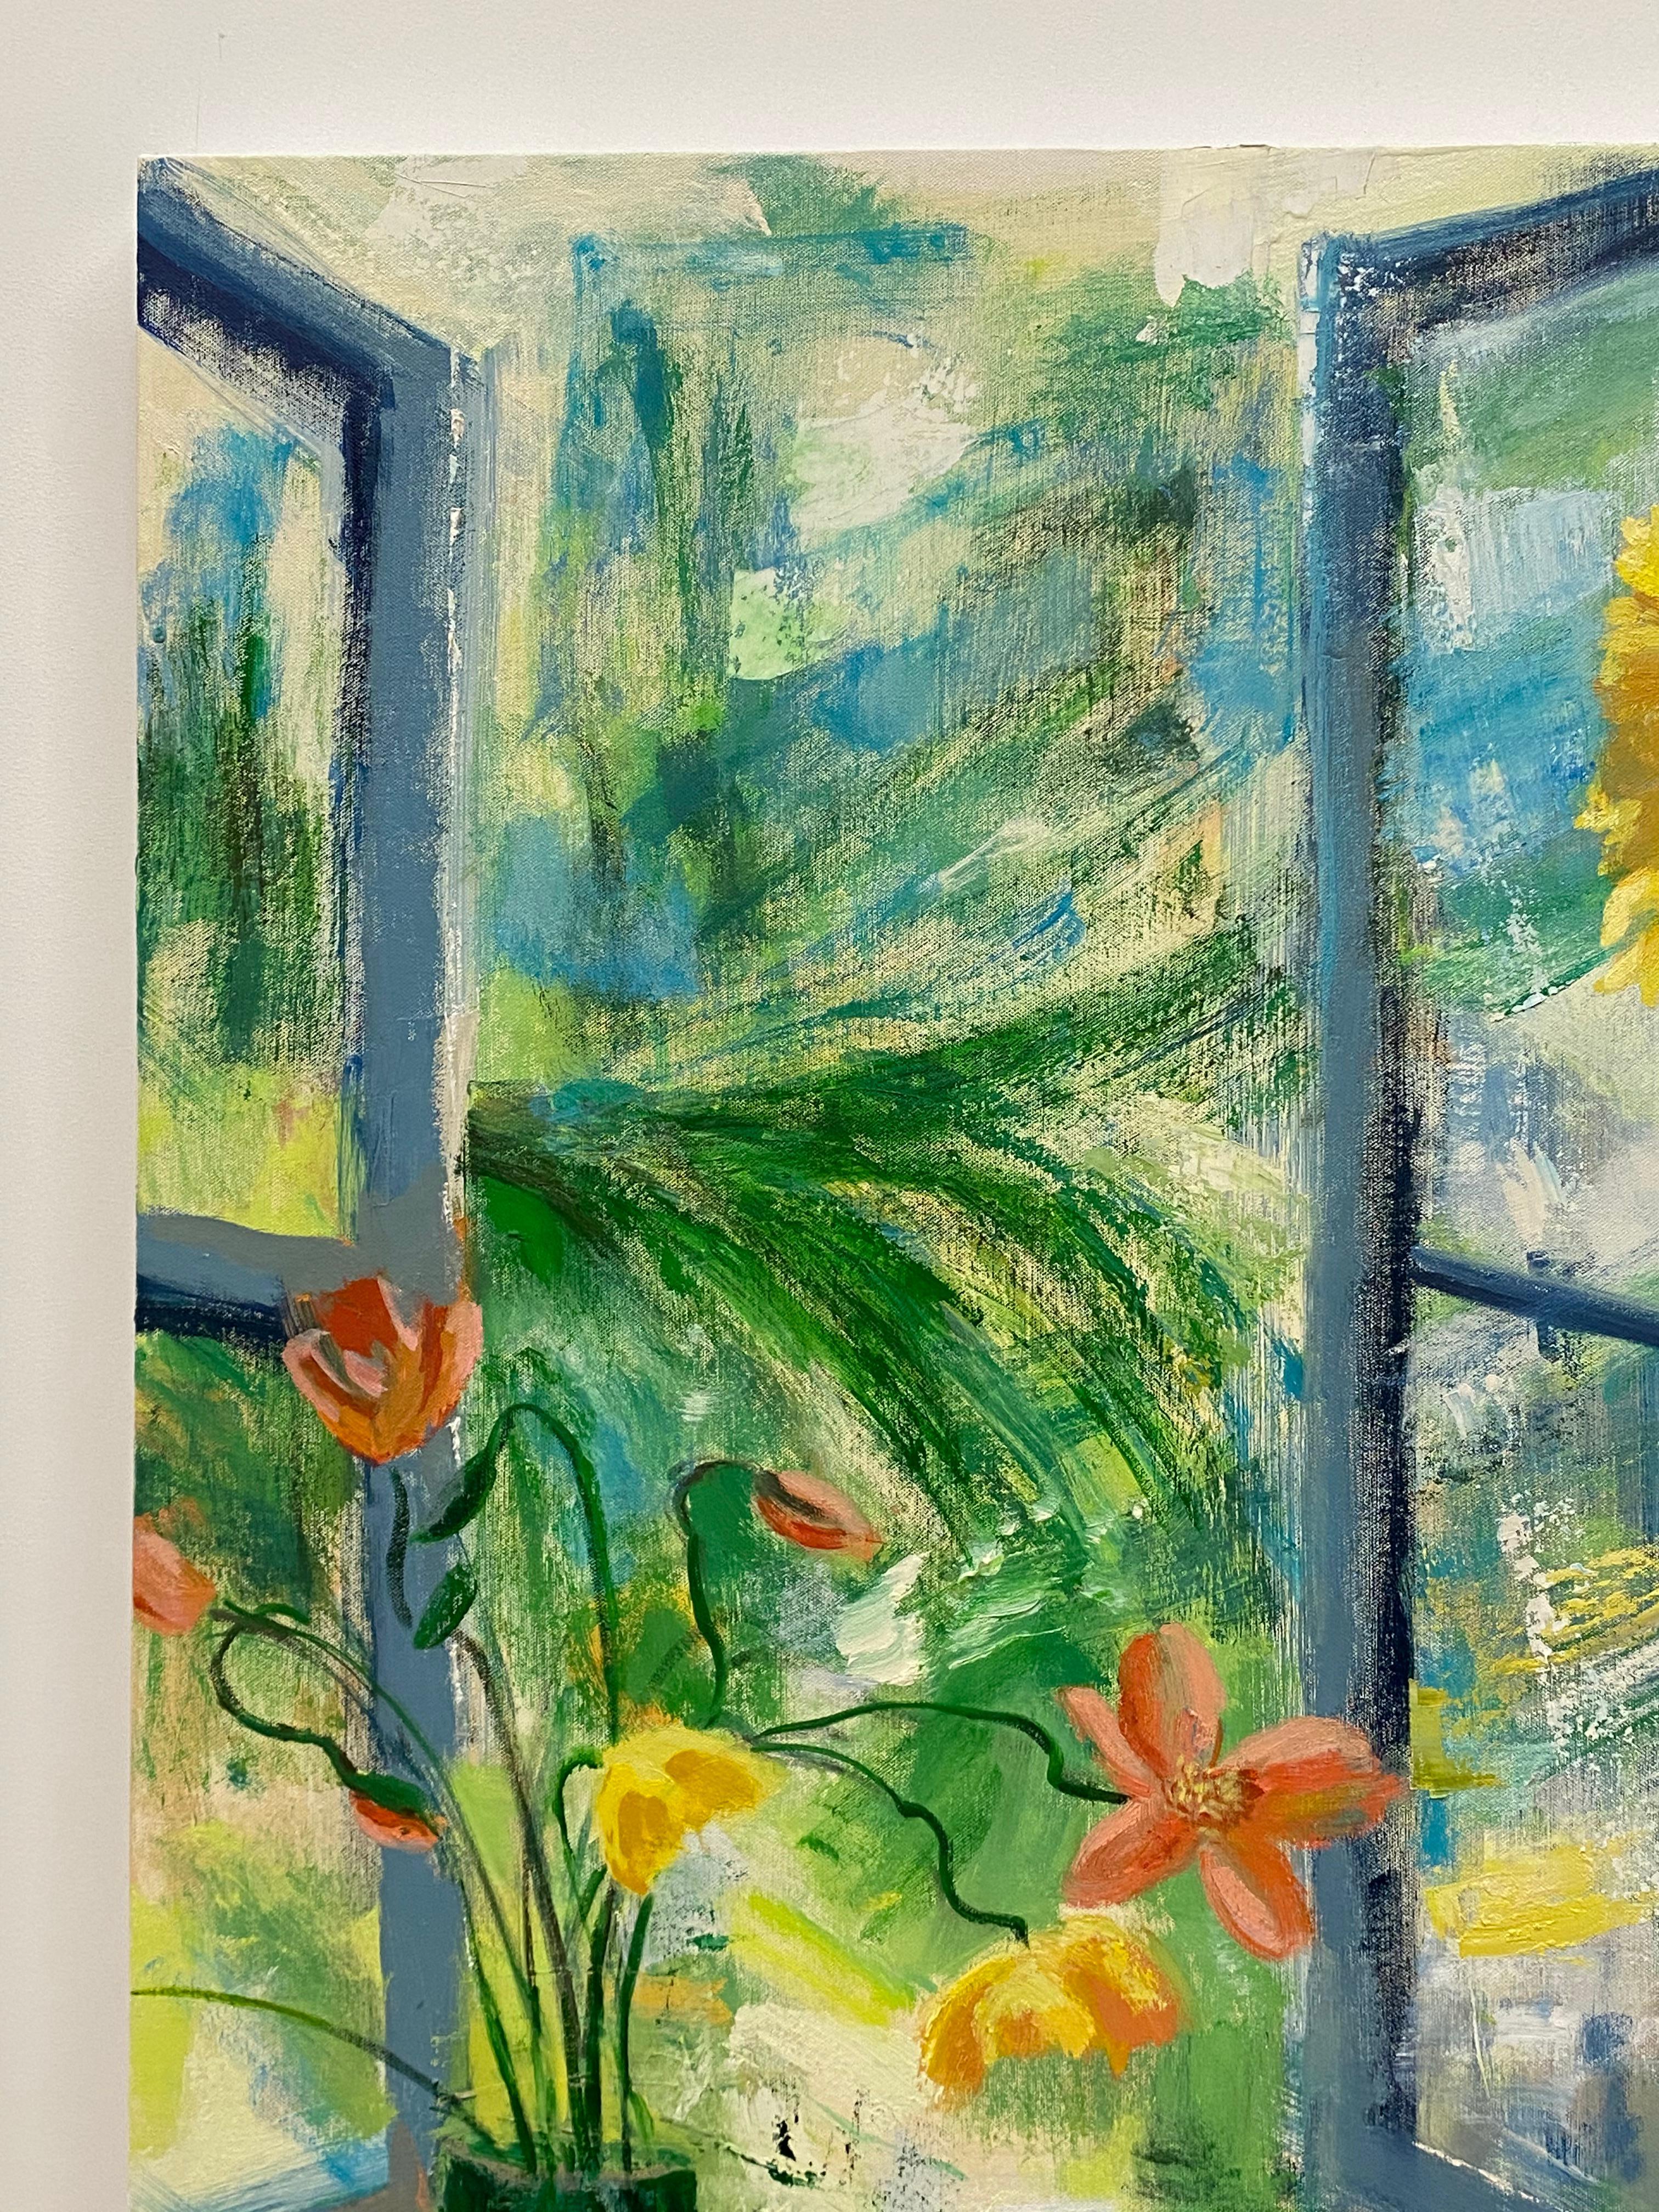 Une scène d'intérieur lumineuse et accueillante avec une nature morte composée de joyeux tournesols jaunes dans une jardinière sur un support, assis à côté d'une table avec trois citrons jaunes et un bouquet de fleurs corail et jaunes dans un vase